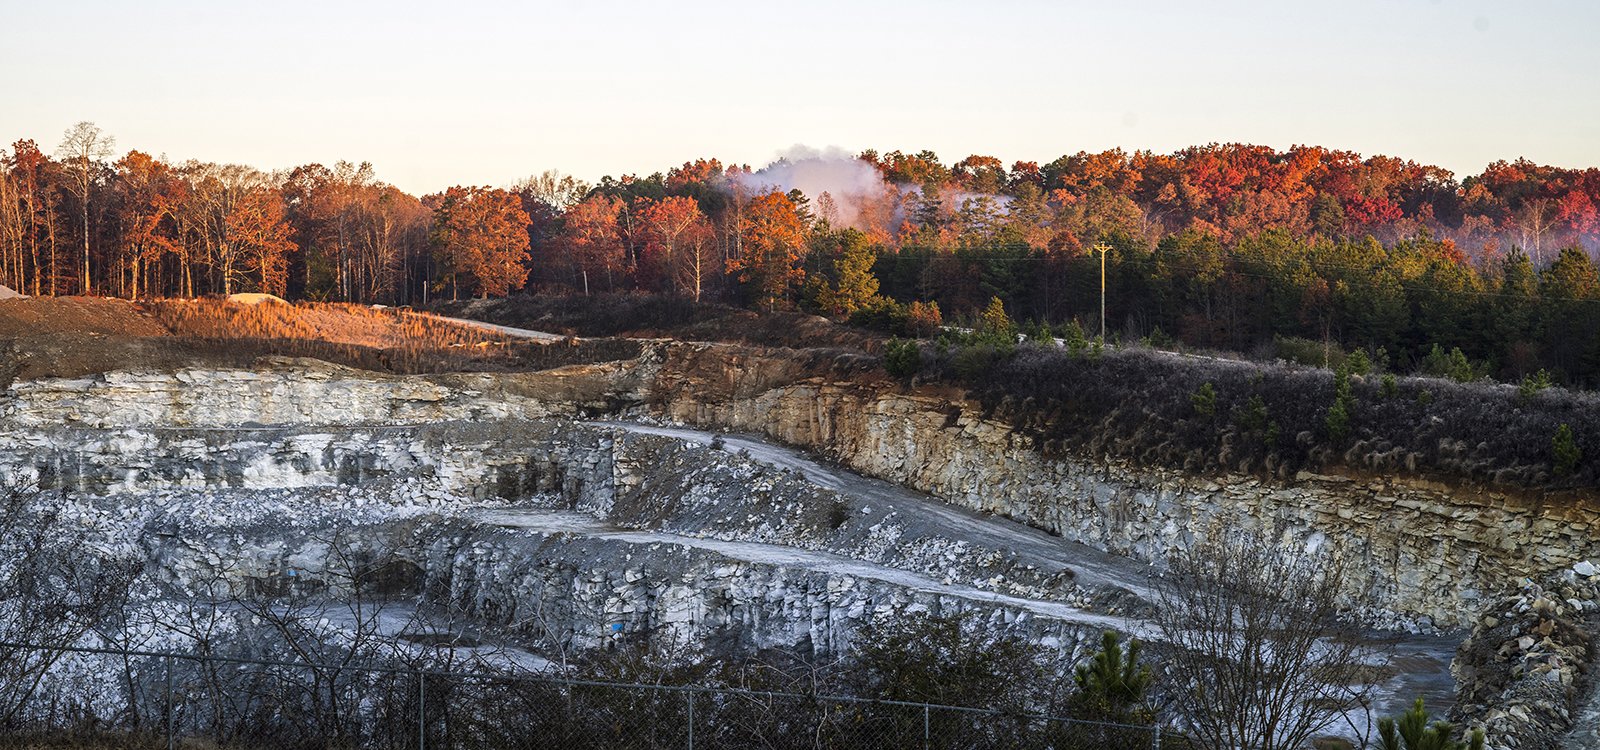 La carrière extrait du granit bleu, la roche officielle de l’État de Caroline du Sud. 